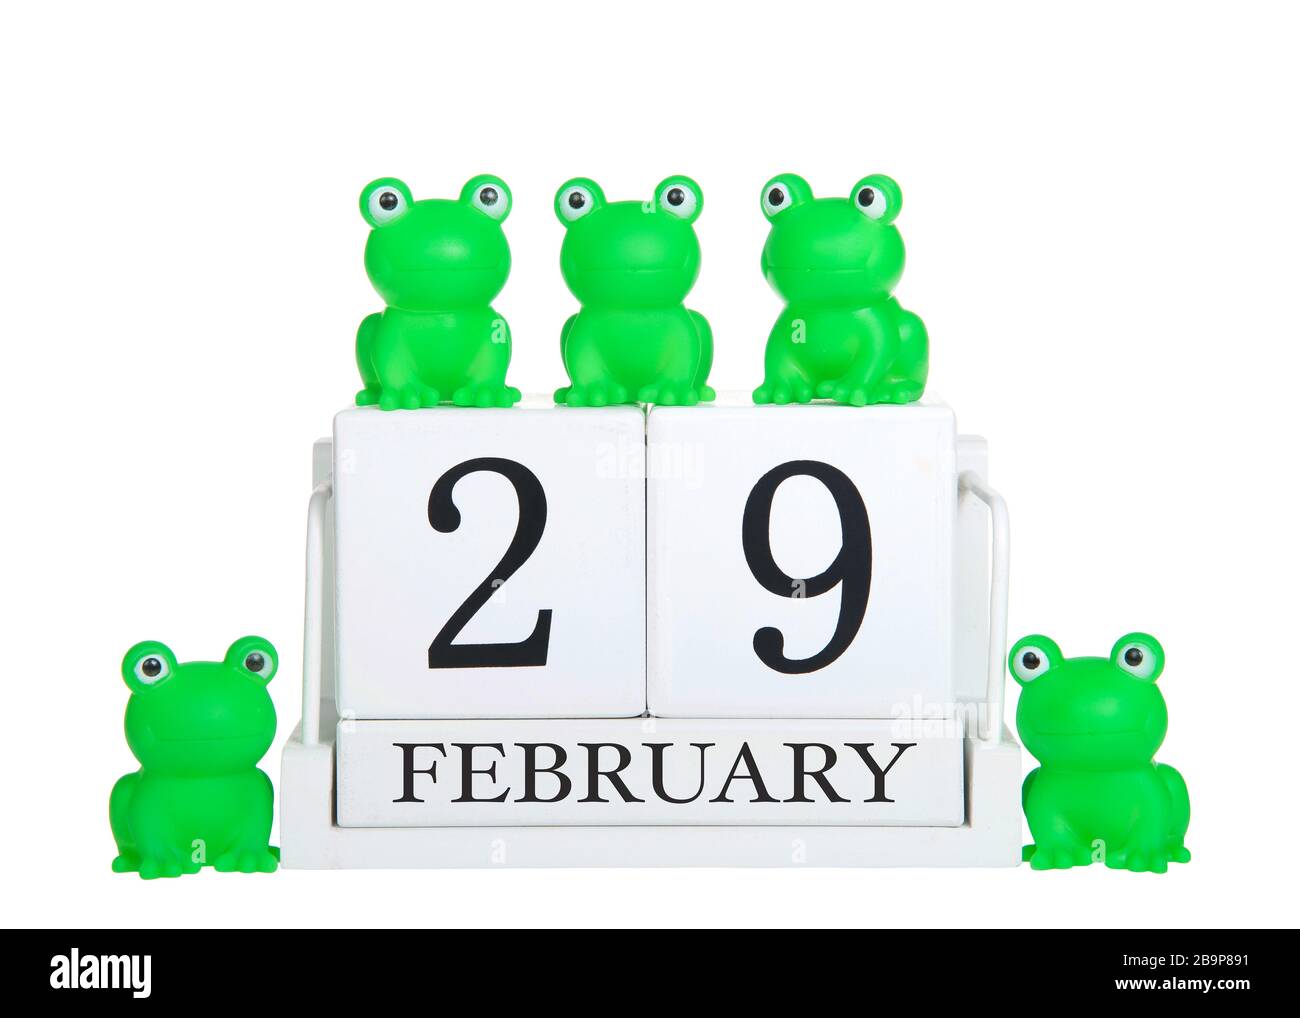 Blocs de calendrier blanc 29 février isolés sur fond blanc avec des grenouilles vertes génériques sur et autour du calendrier. Thème année bissextile Banque D'Images